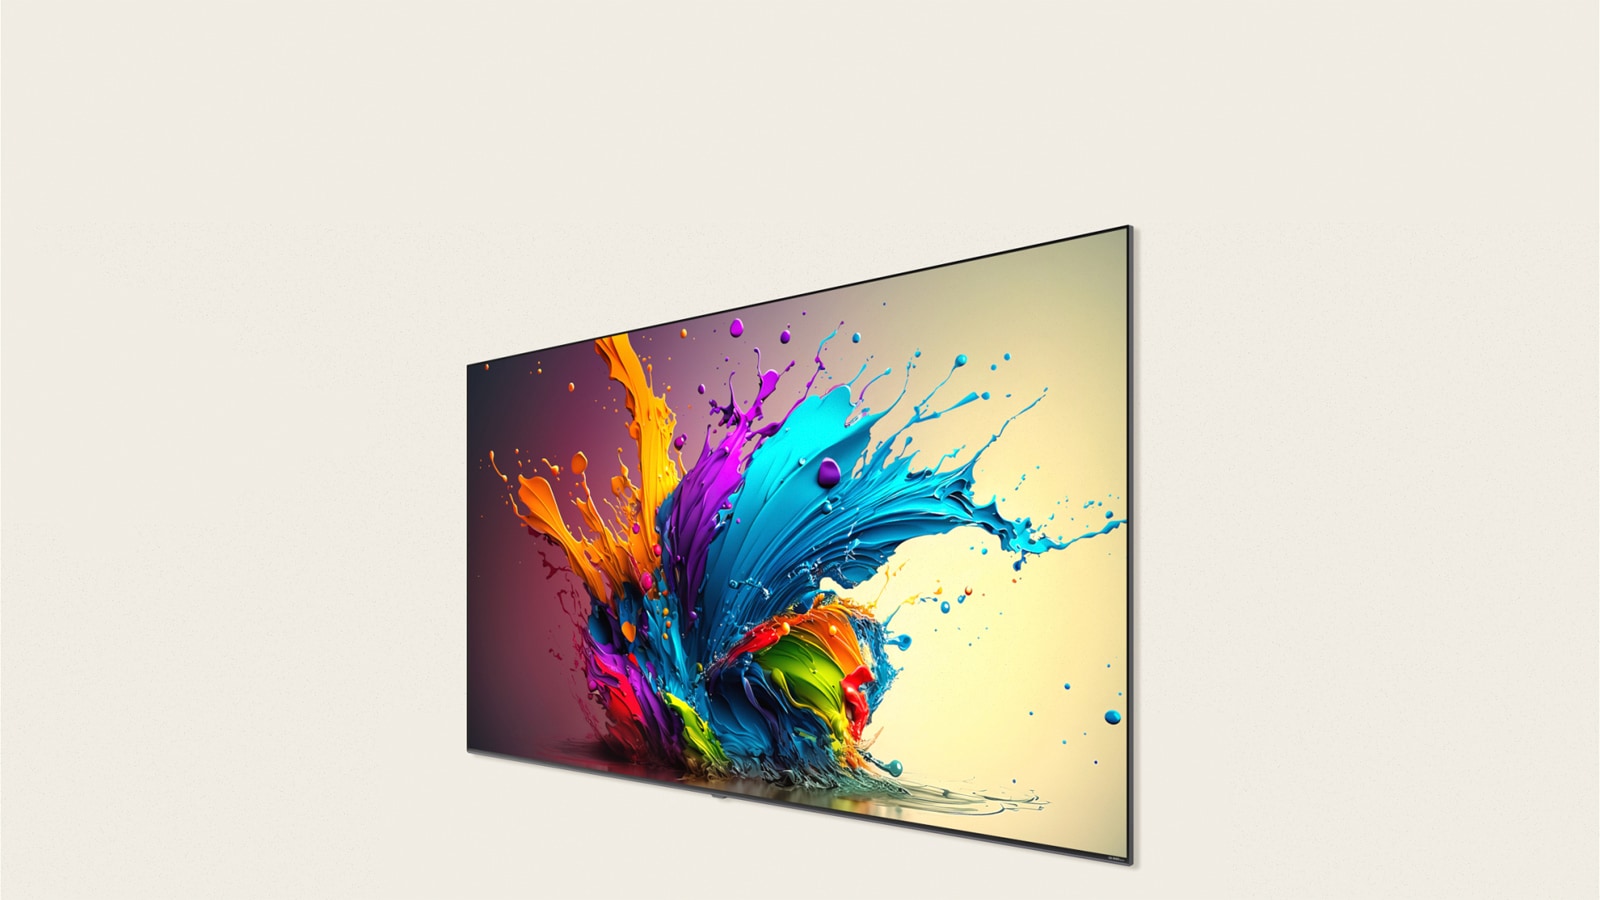 LG QNED MiniLED QNED90 螢幕顯示色彩繽紛的藝術作品。